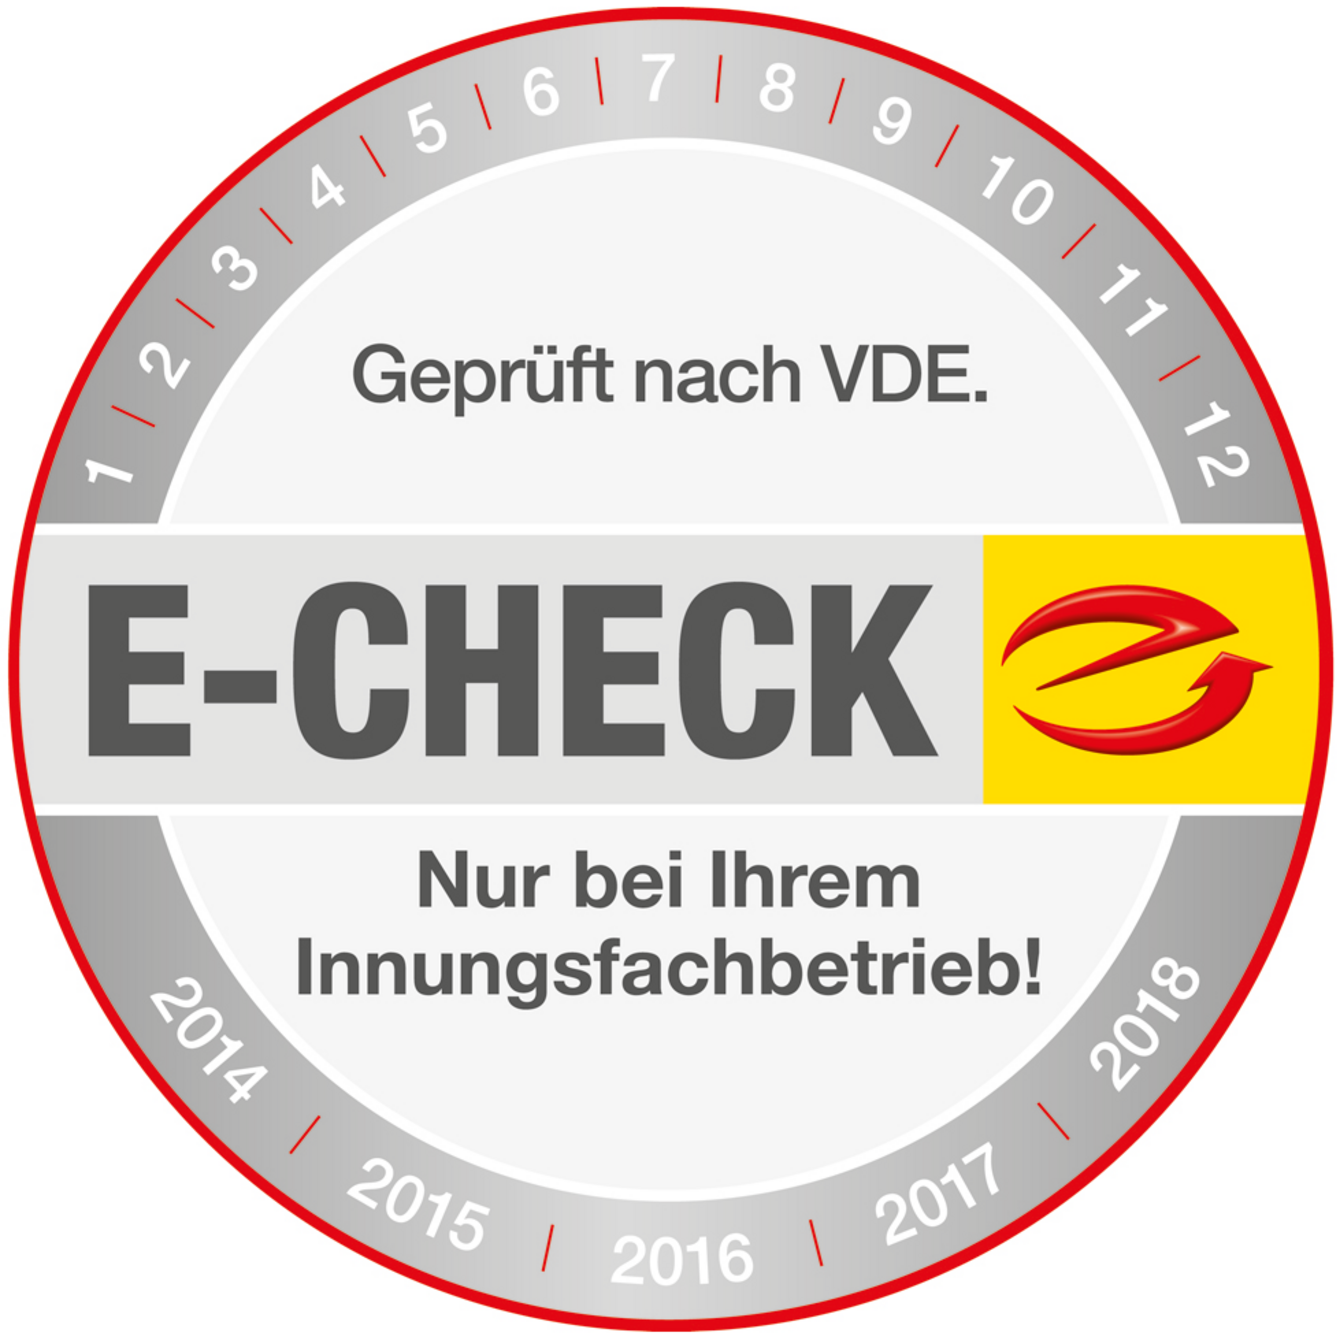 Der E-Check bei Elektro Mühlbauer GmbH in Lauterhofen